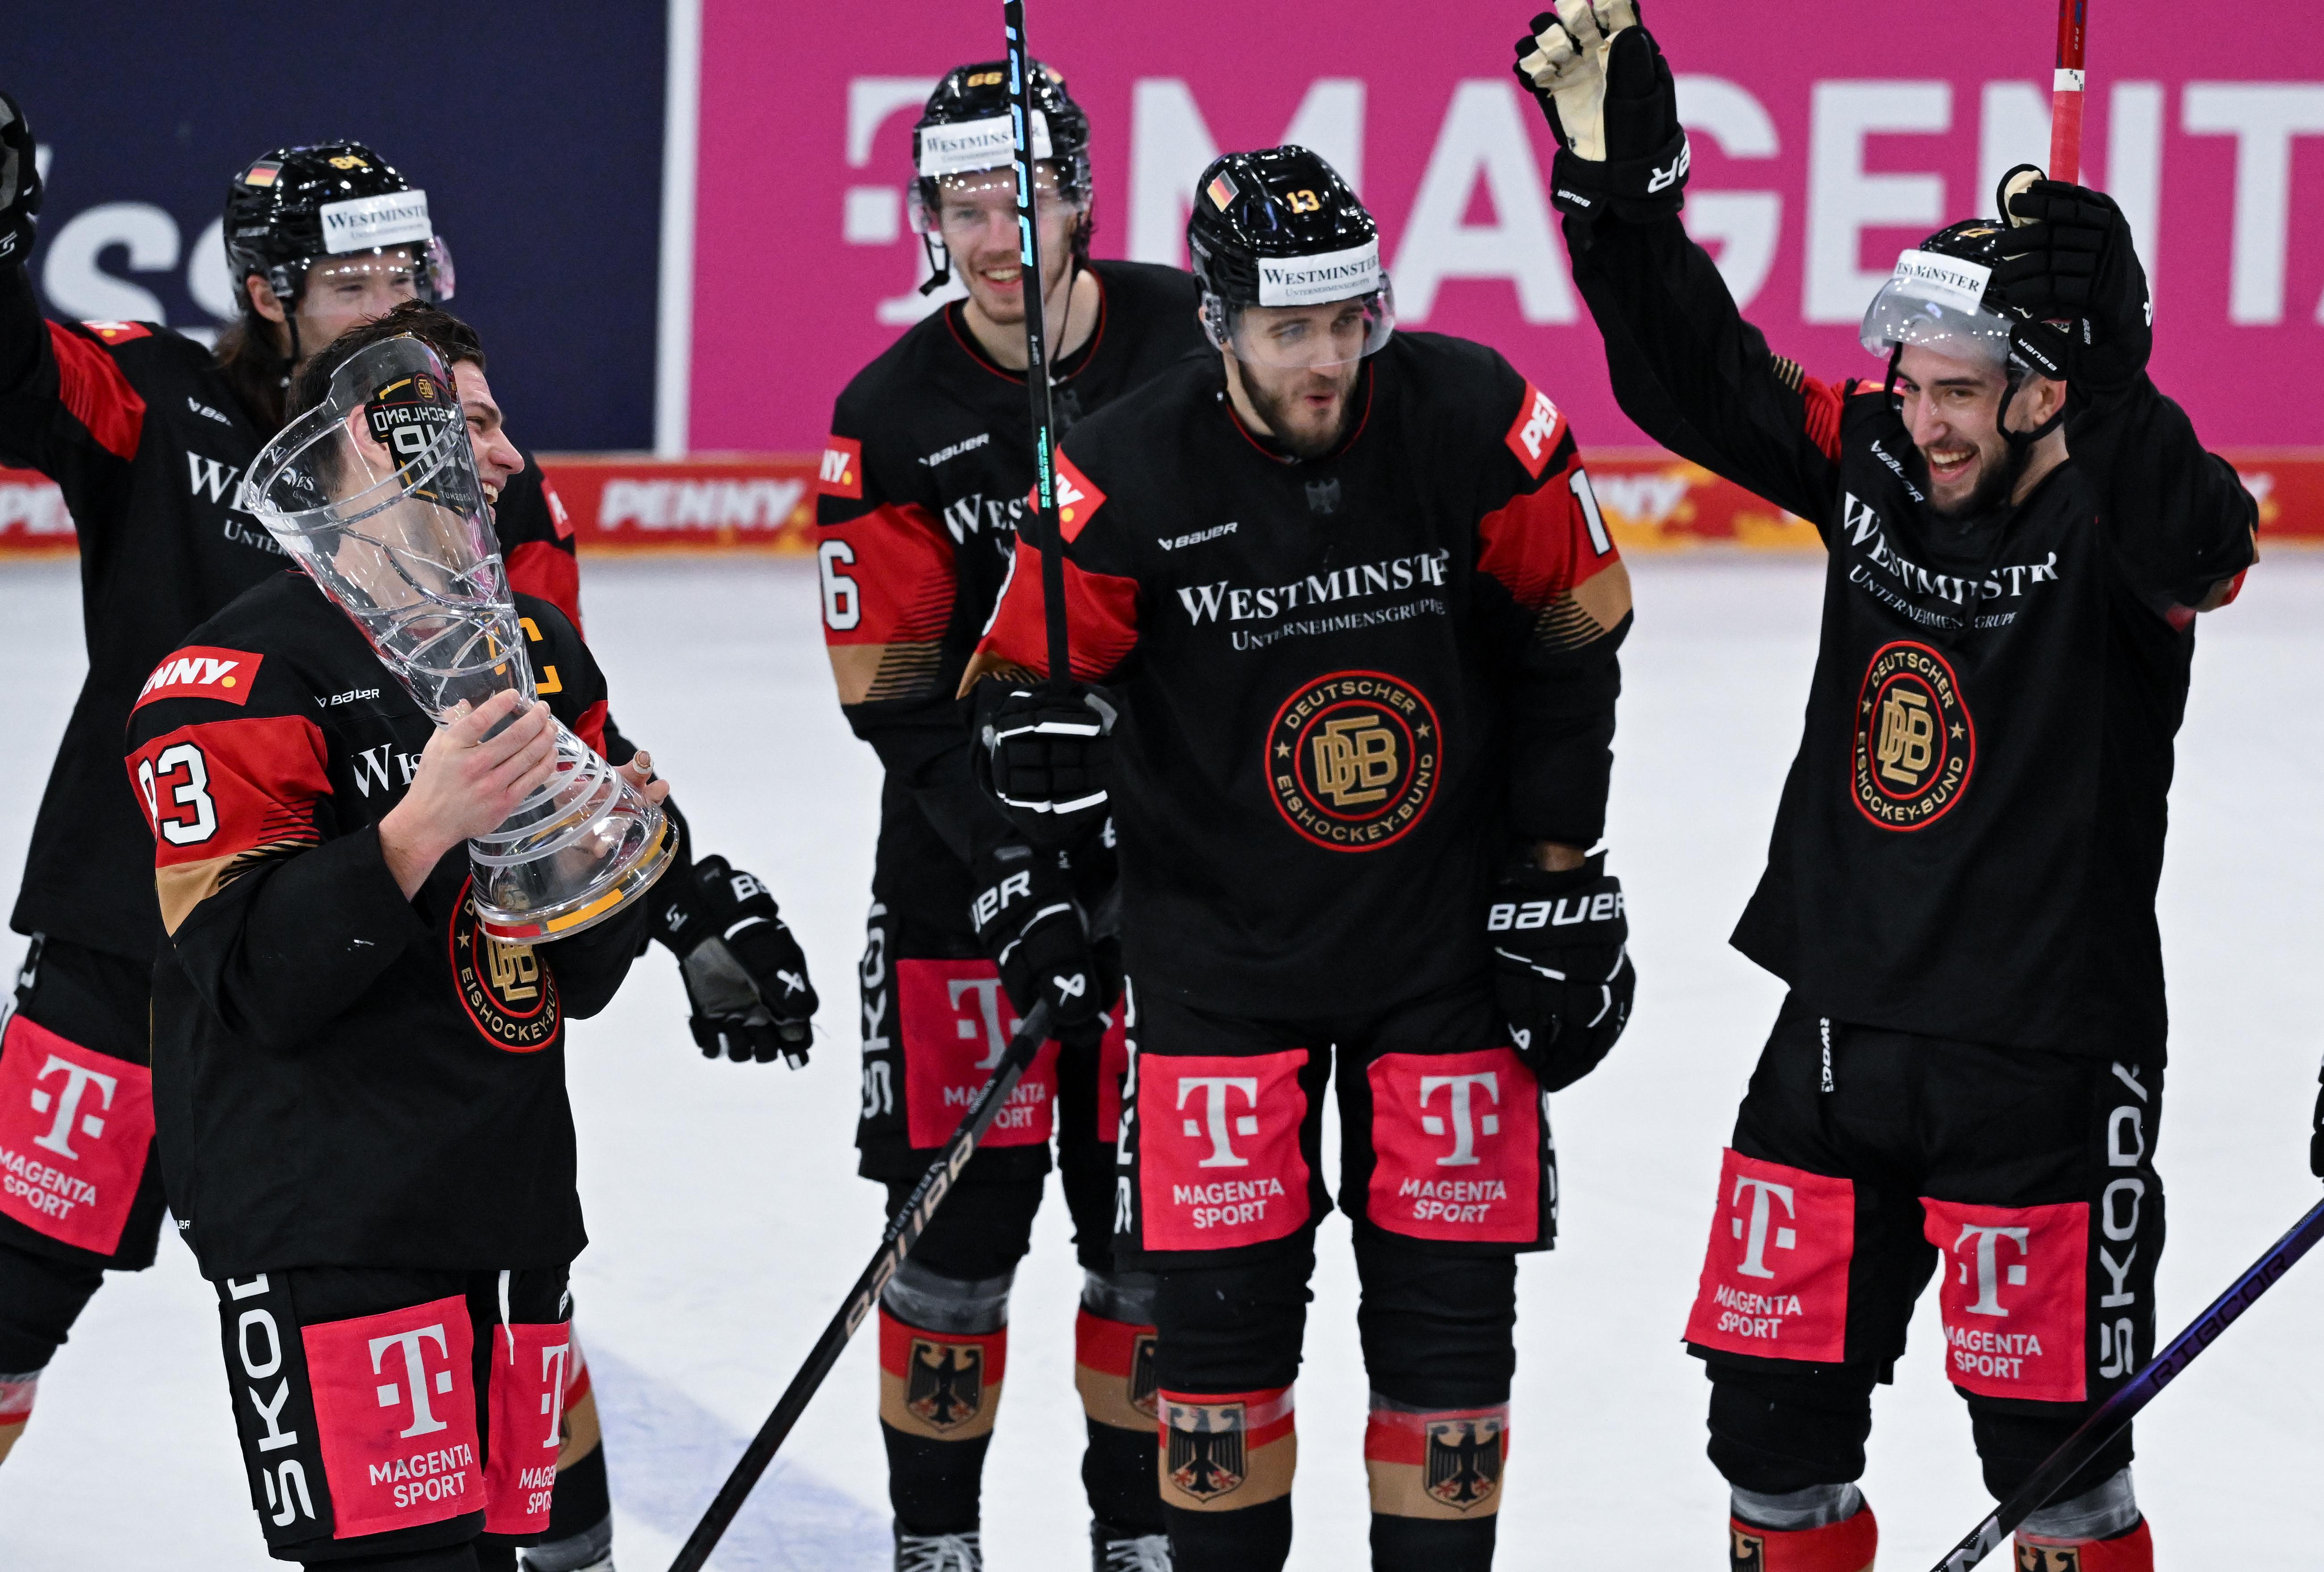 Jubel trotz Niederlage Eishockey-Heimsieg beim Deutschland Cup BR24